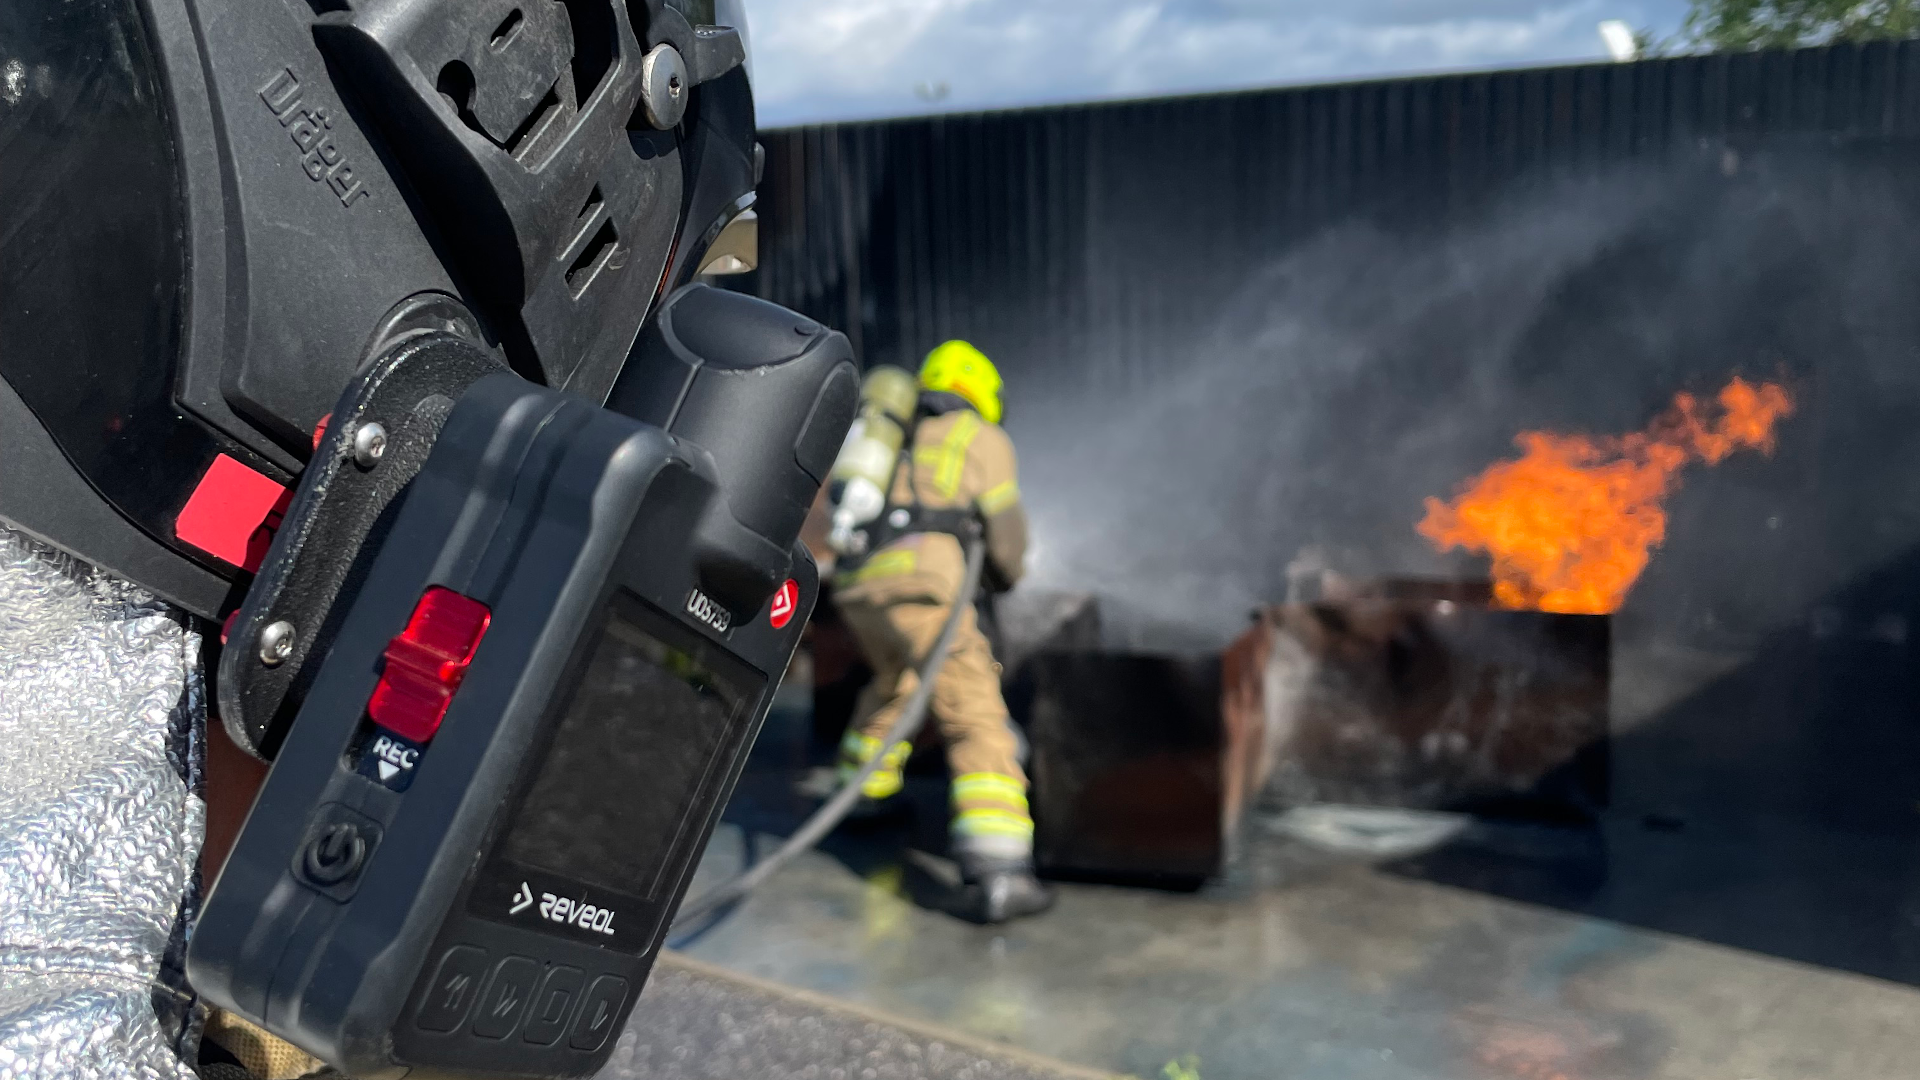 kamera på brandhjelm streamer ildebrand